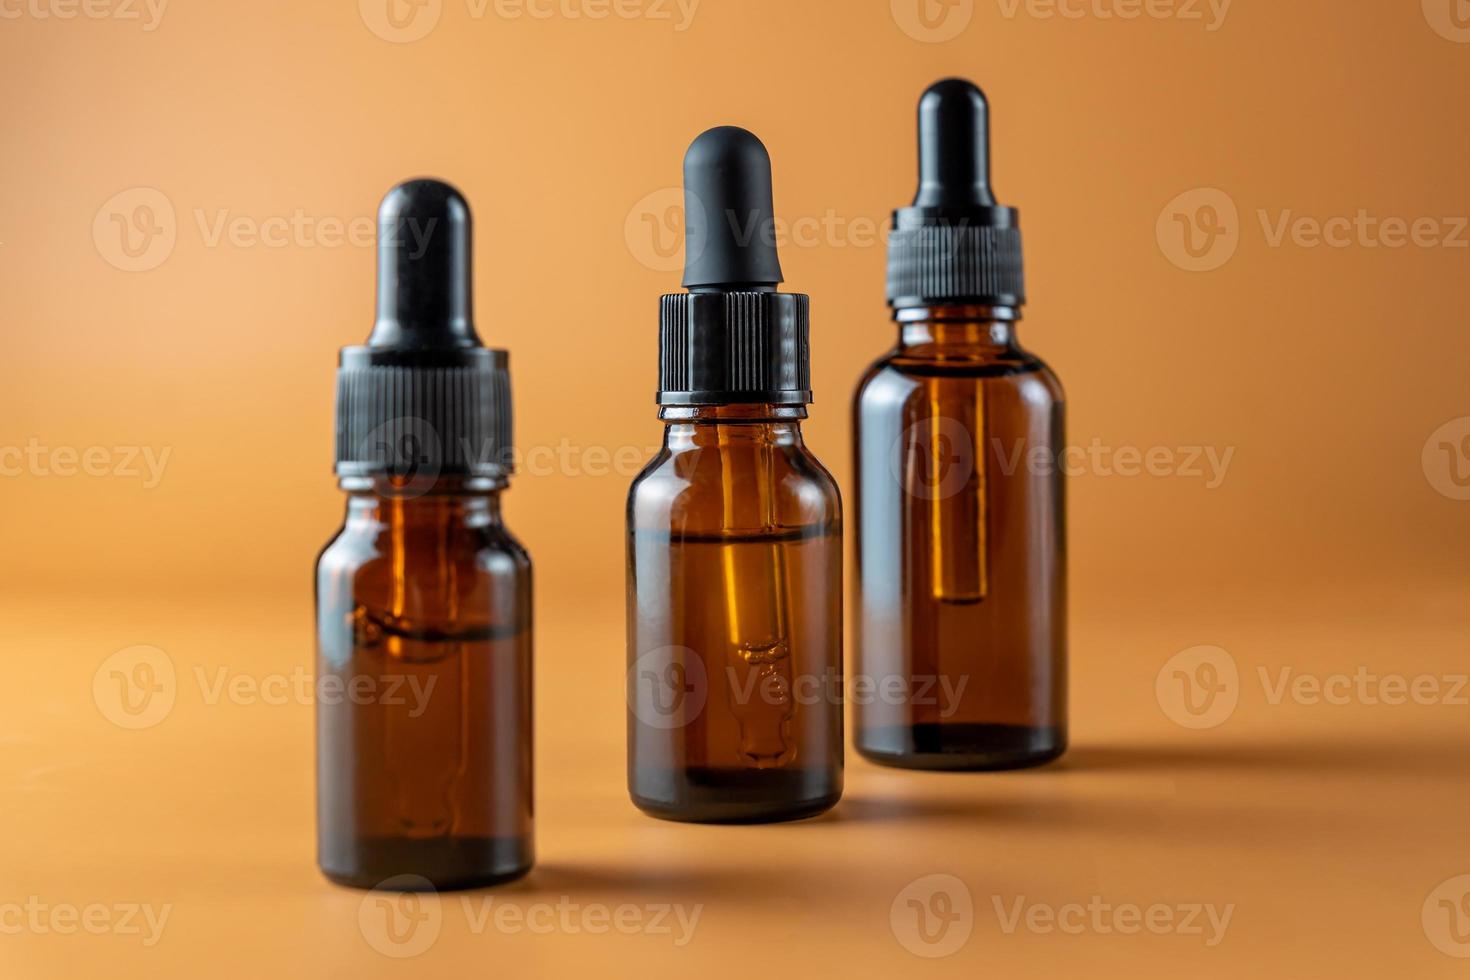 uppsättning av brun glas flaskor med grundläggande olja på en beige bakgrund. förpackning av en skönhet produkt med en pipett för alternativ medicin behandling. aromaterapi, homeopati. omärkt paket foto